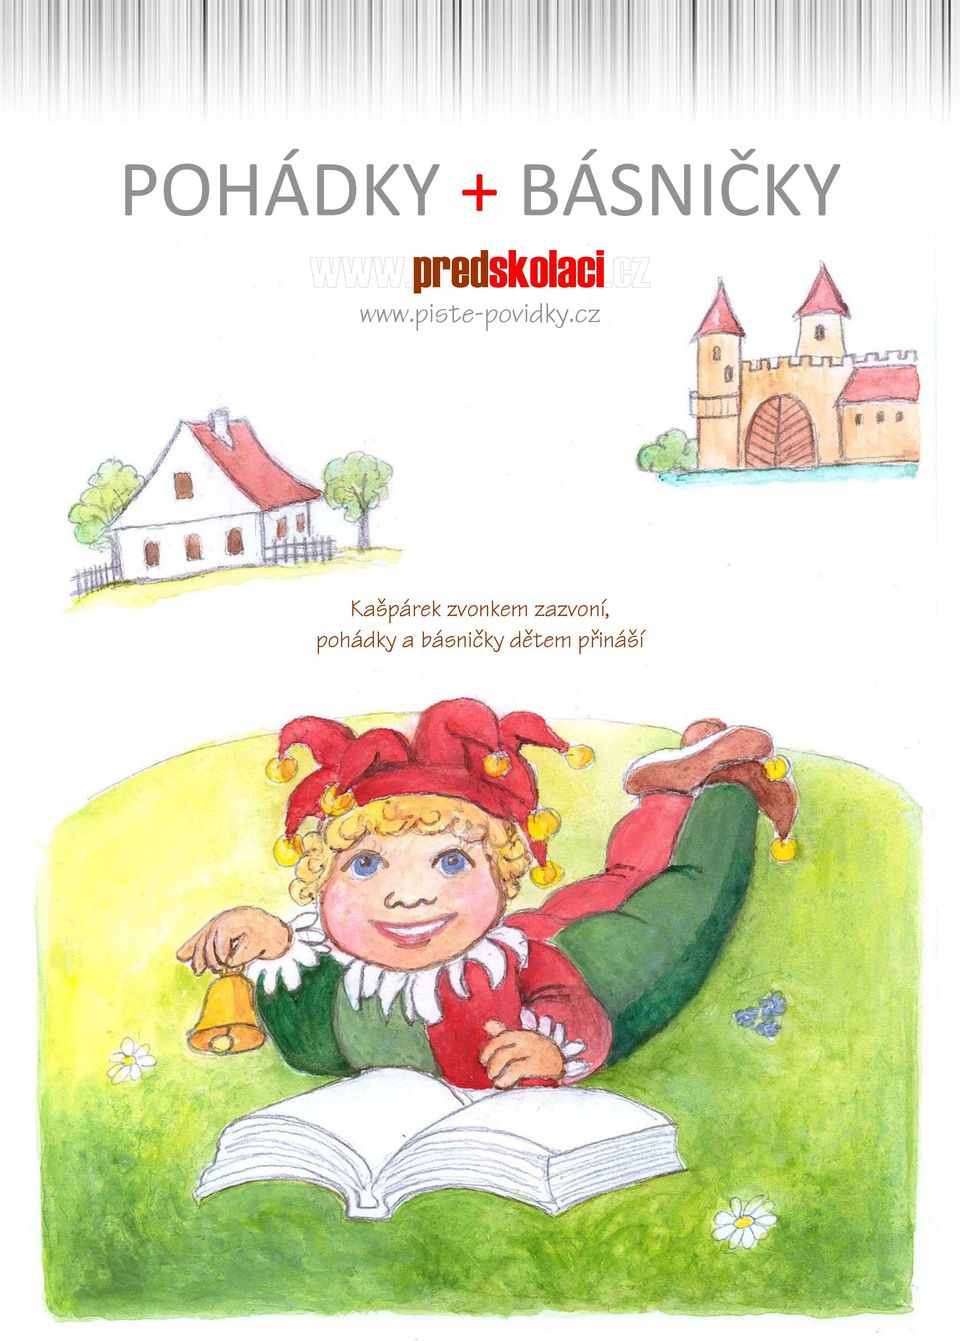 POHÁDKY + BÁSNIČKY. predskolaci. Kašpárek zvonkem zazvoní, pohádky a  básničky dětem přináší - PDF Free Download